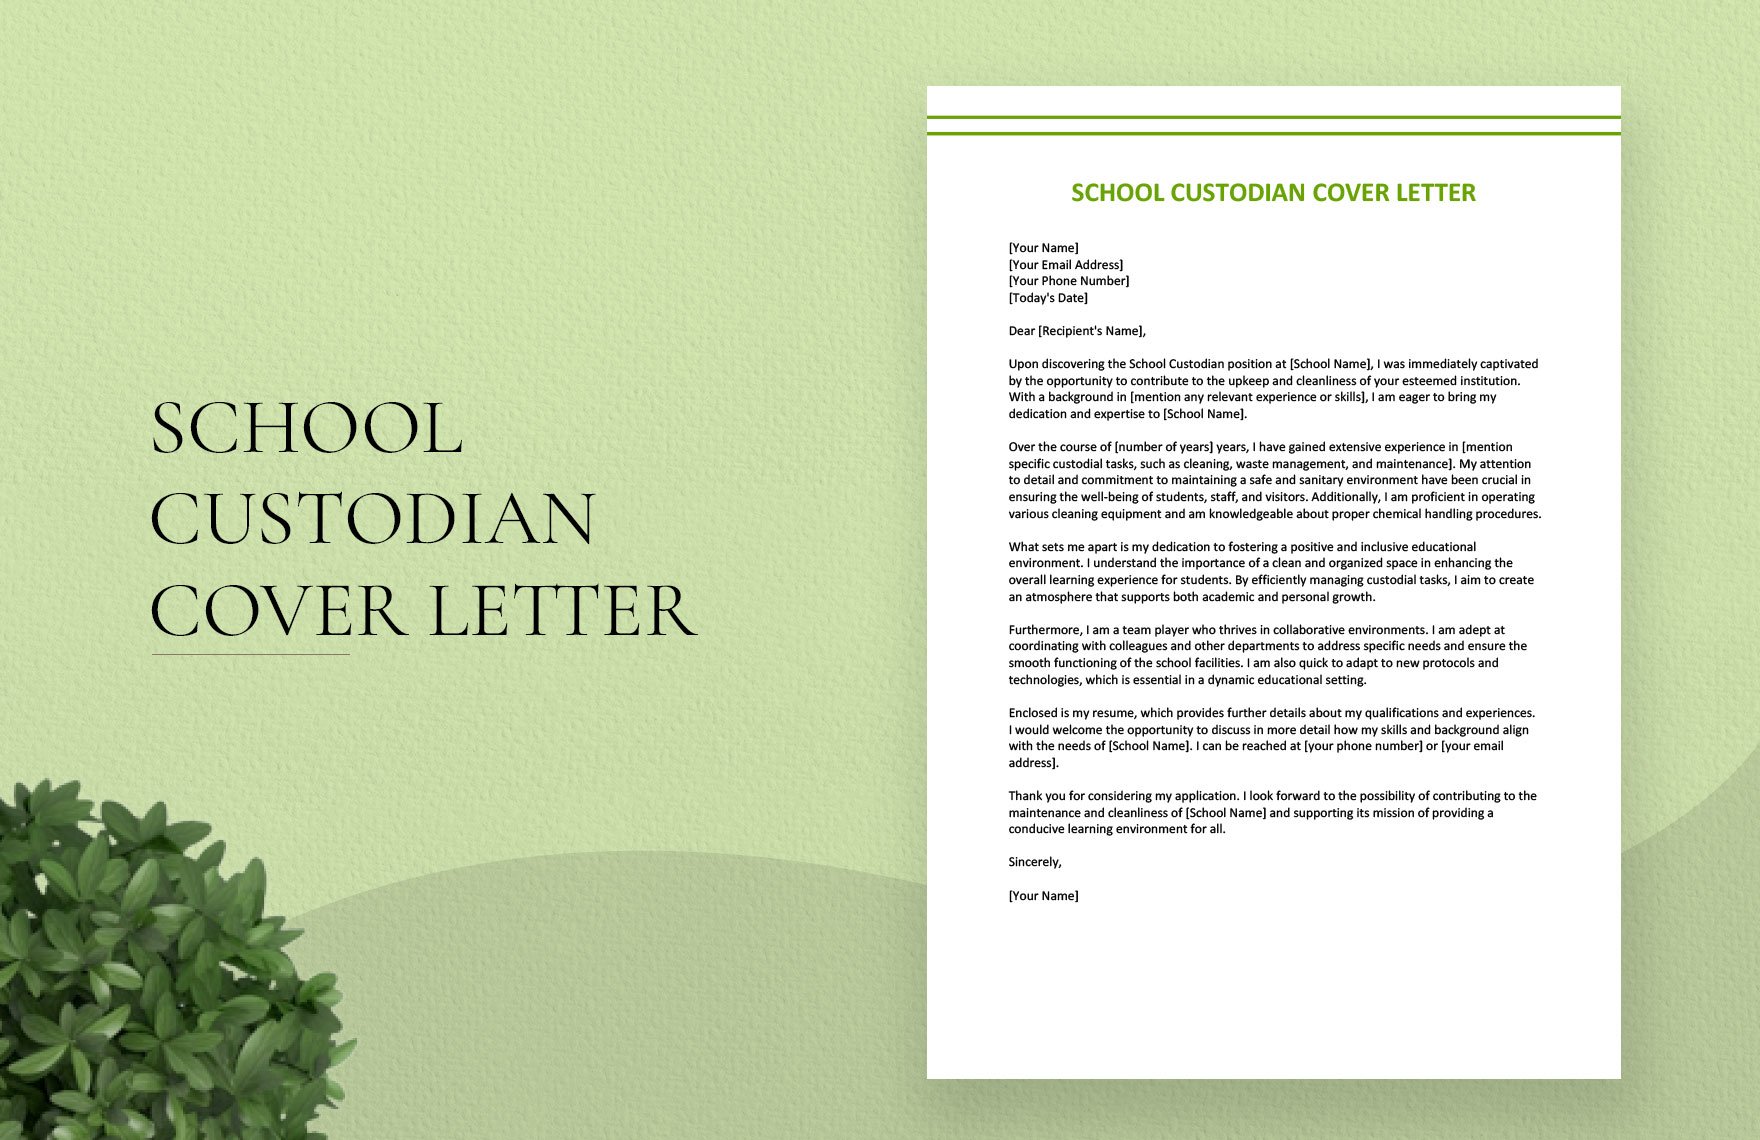 cover letter for school custodian position